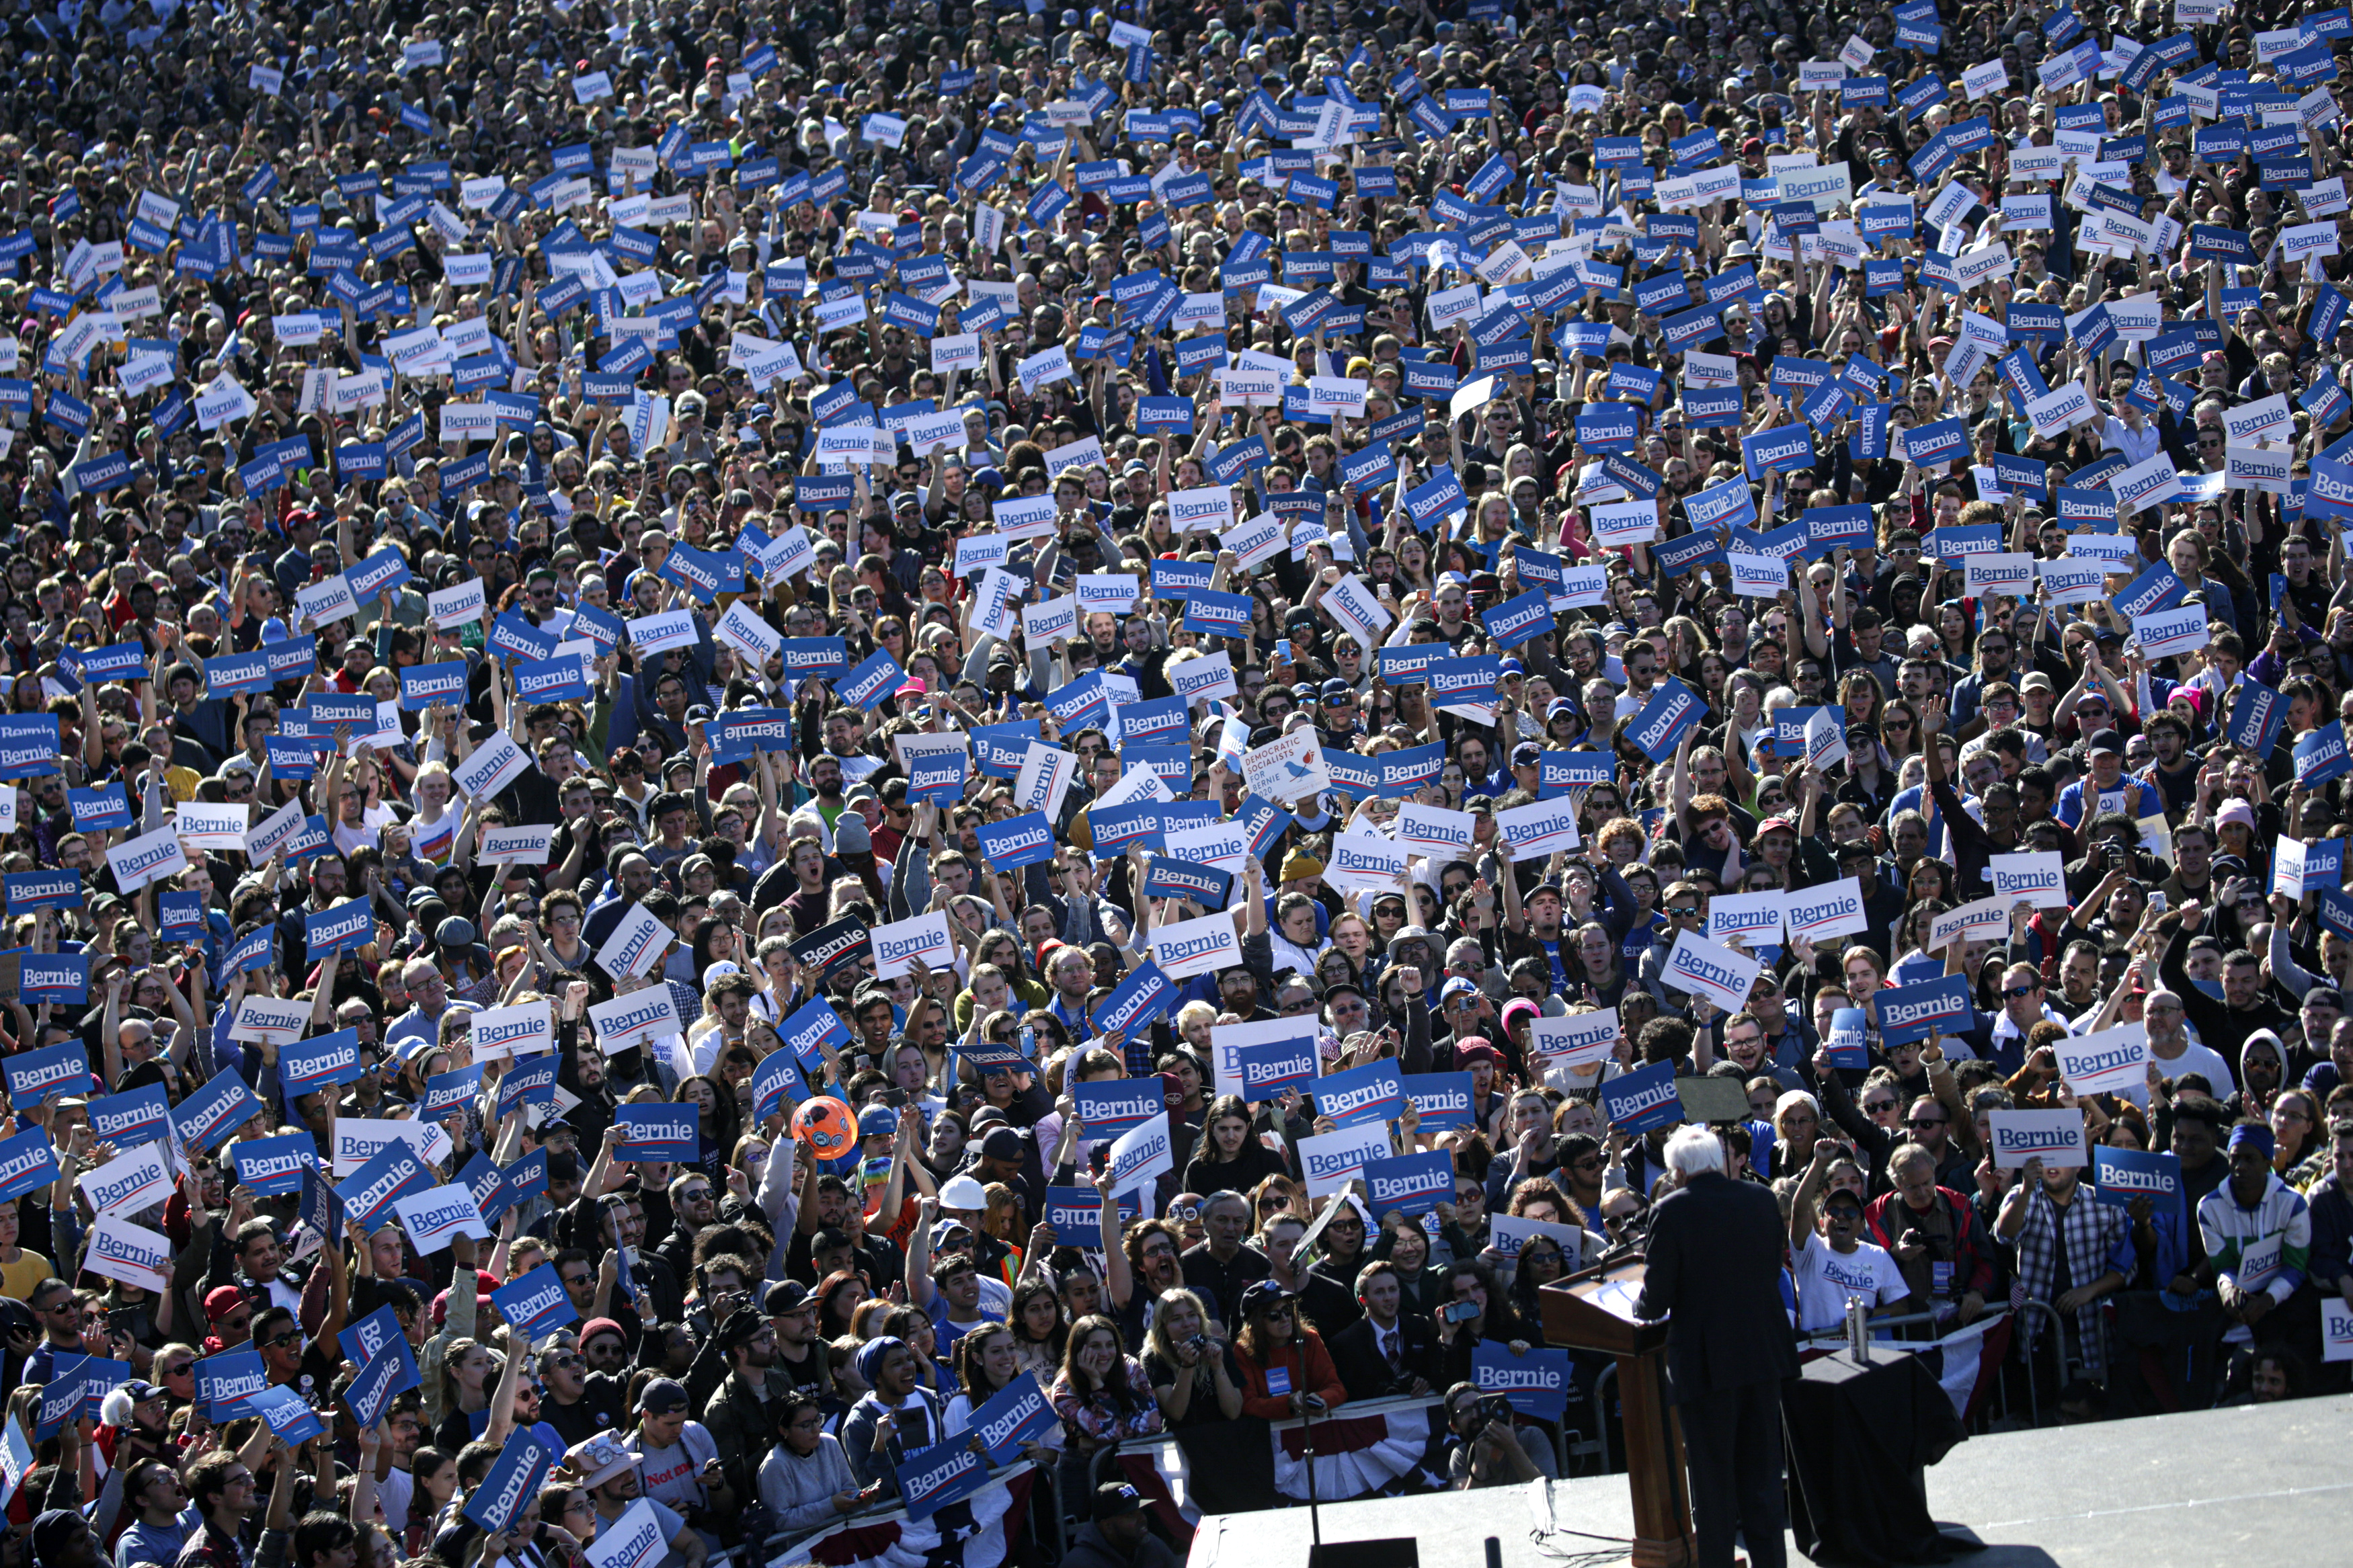 A photo of a Bernie Sanders rally.